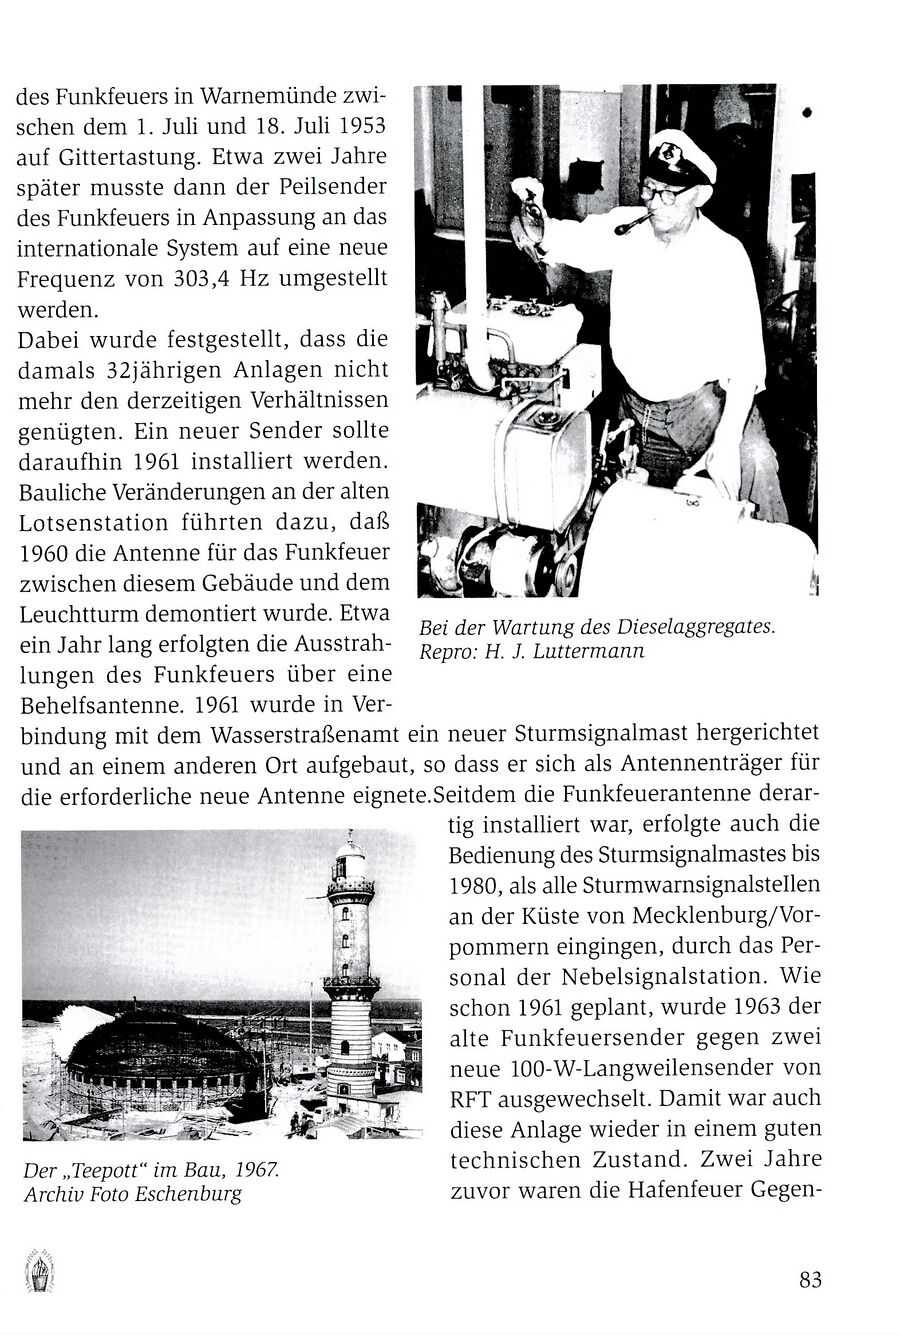 wmde Leuchtturm Luttermann 2013 083